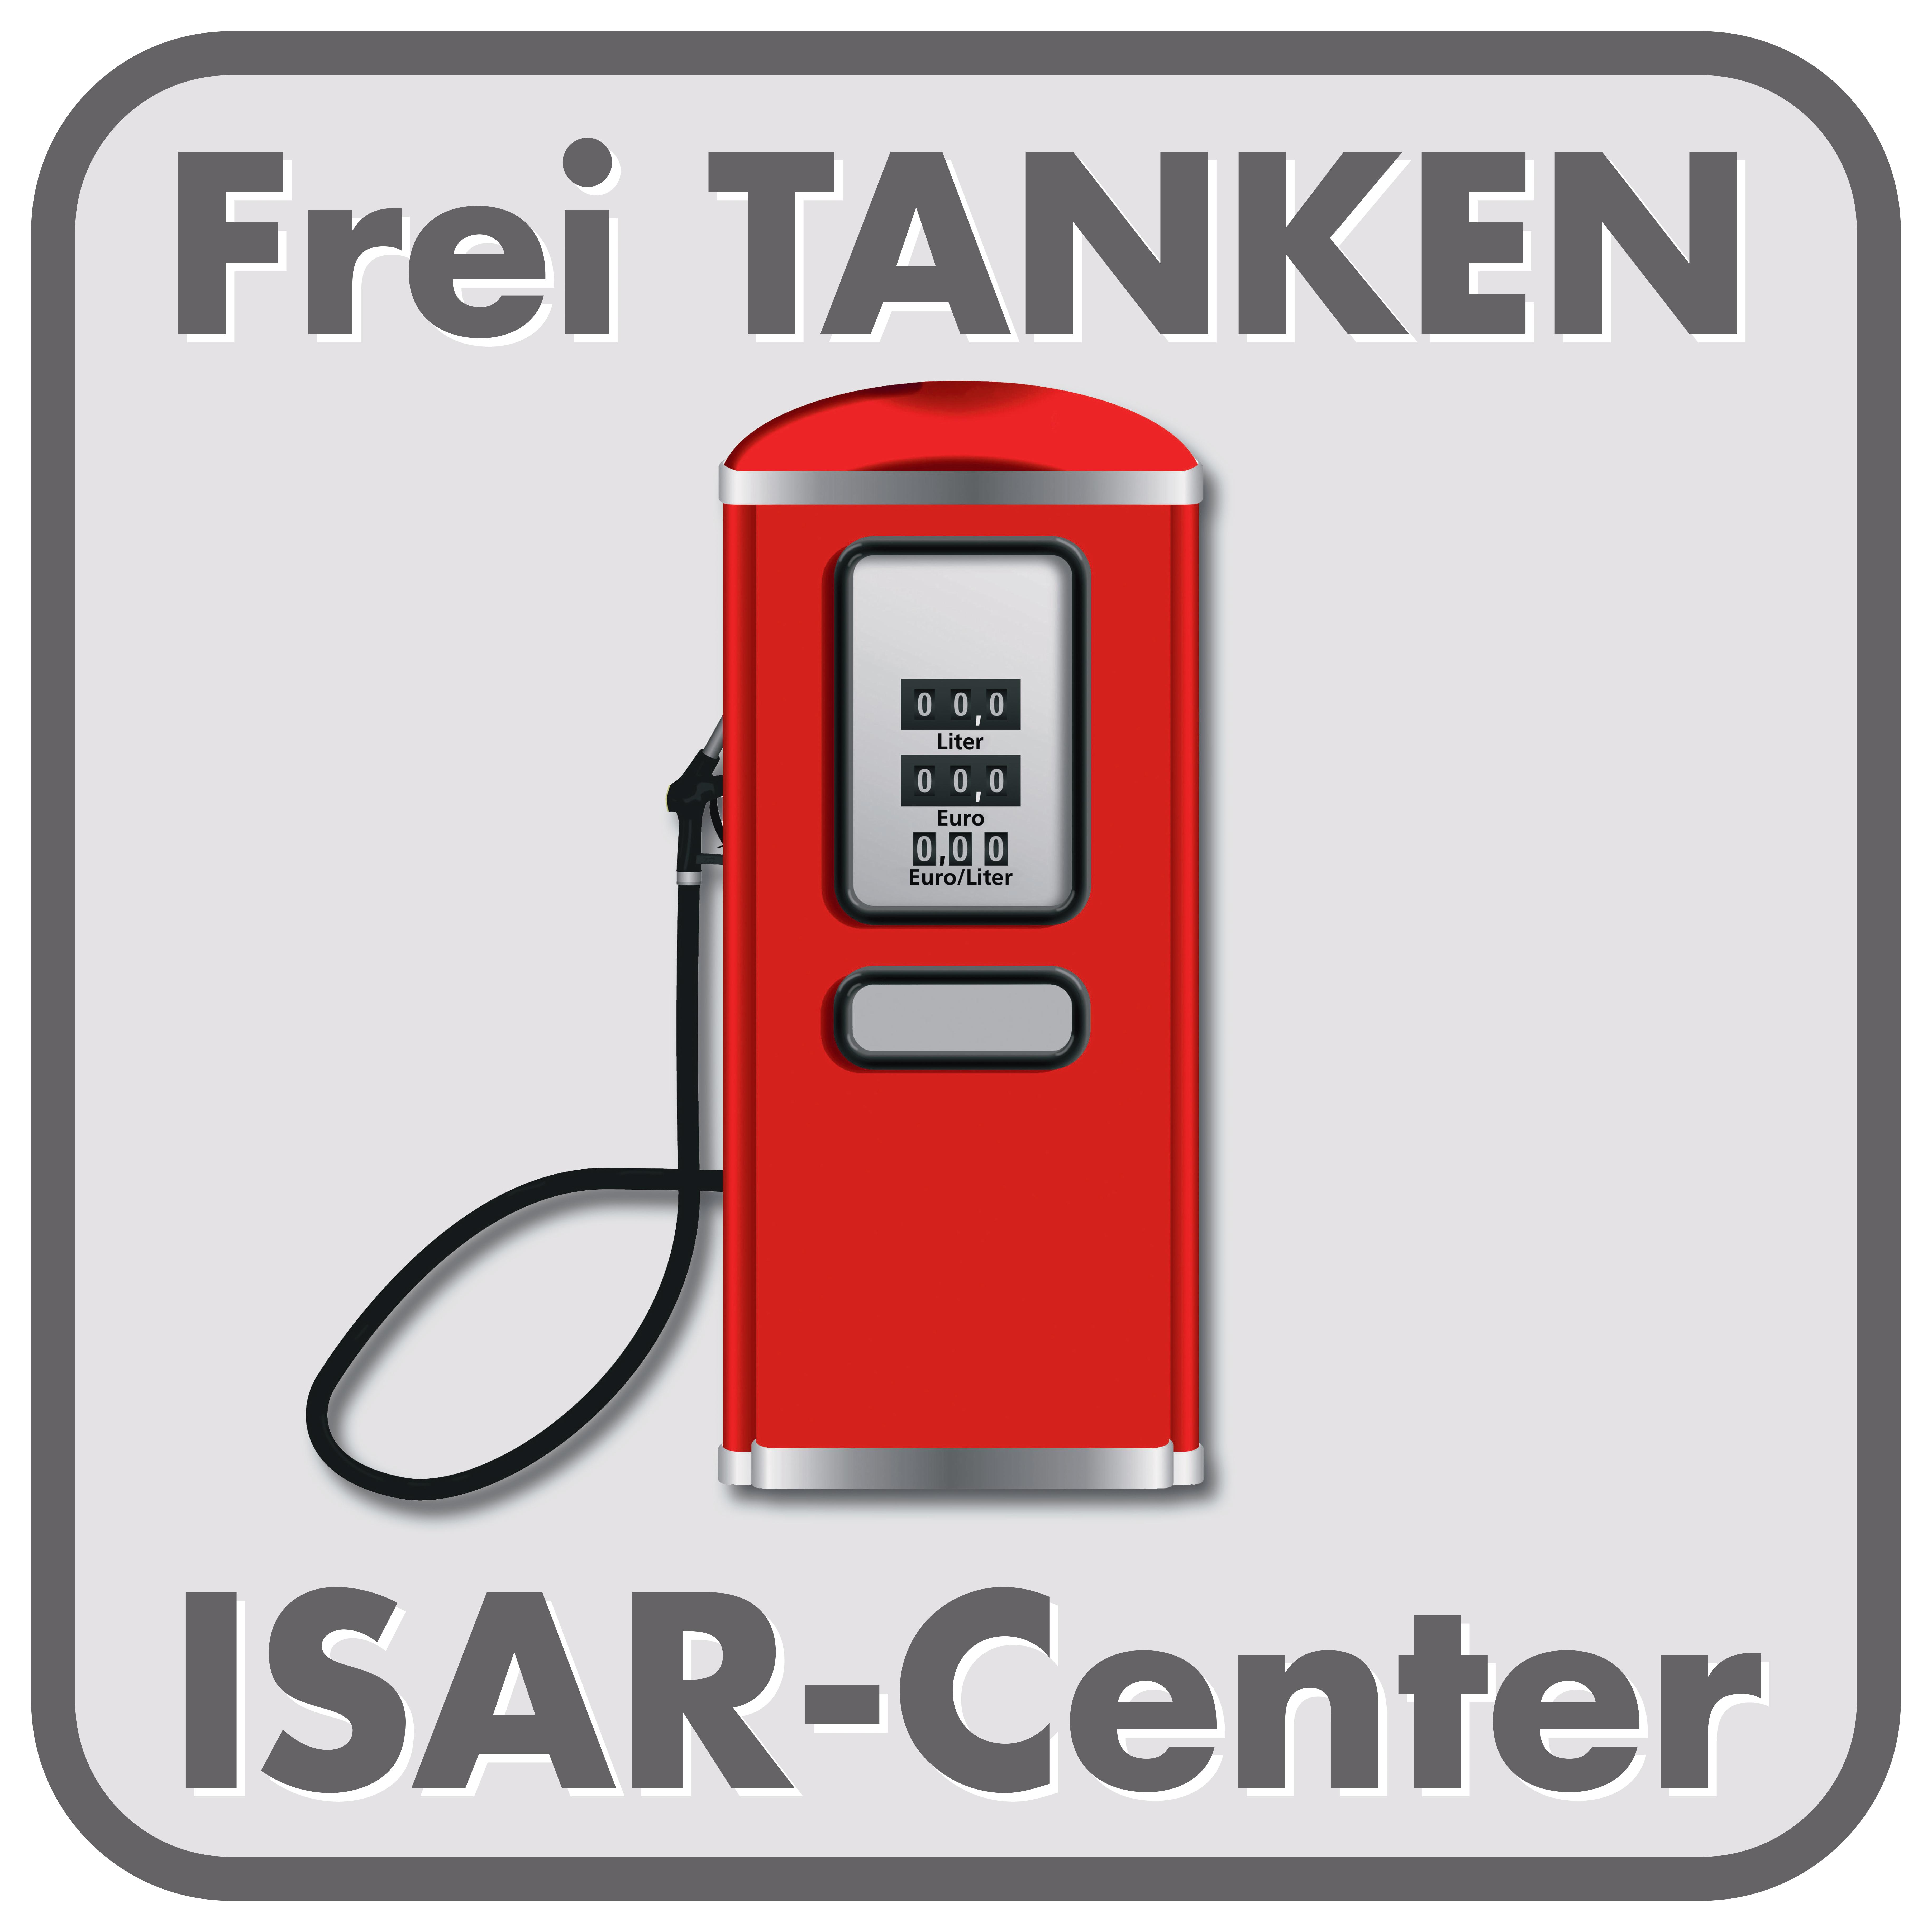 Tankstelle Isar-Center Logo